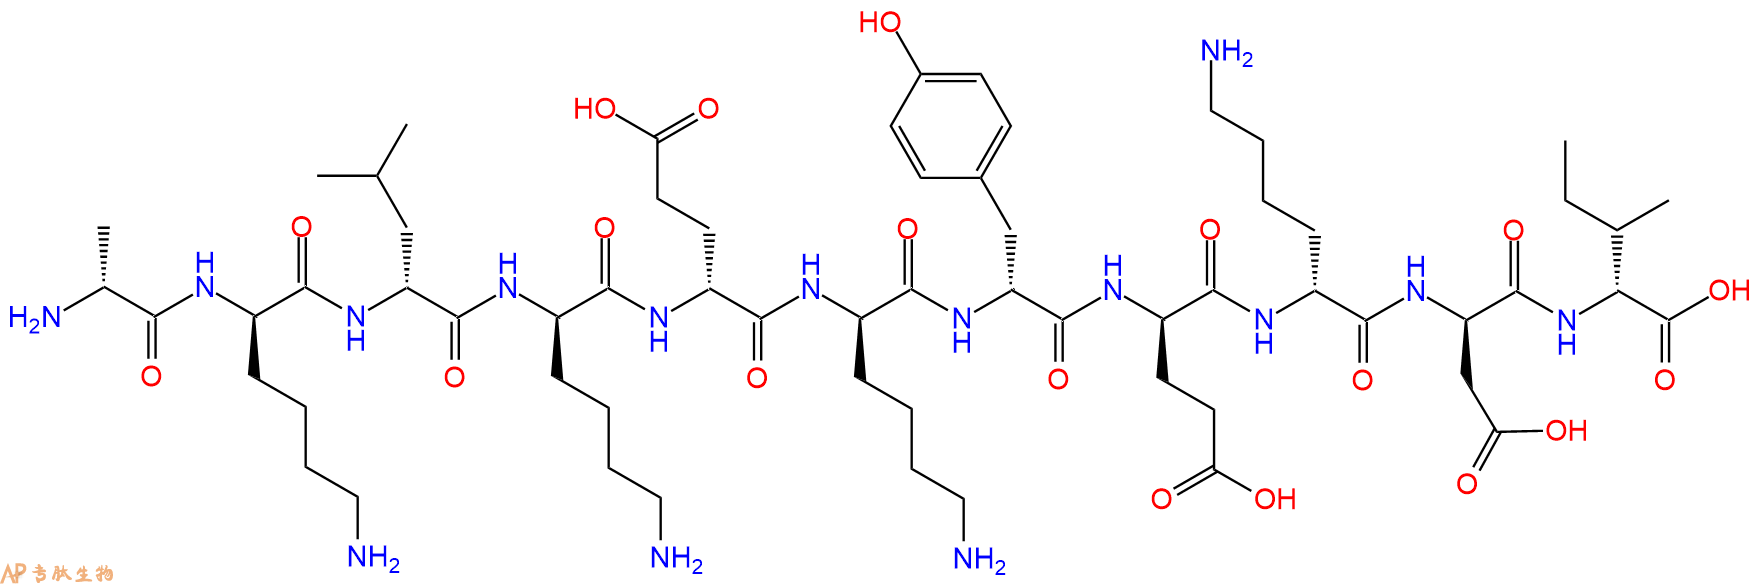 专肽生物产品H2N-DAla-DLys-DLeu-DLys-DGlu-DLys-DTyr-DGlu-DLys-D